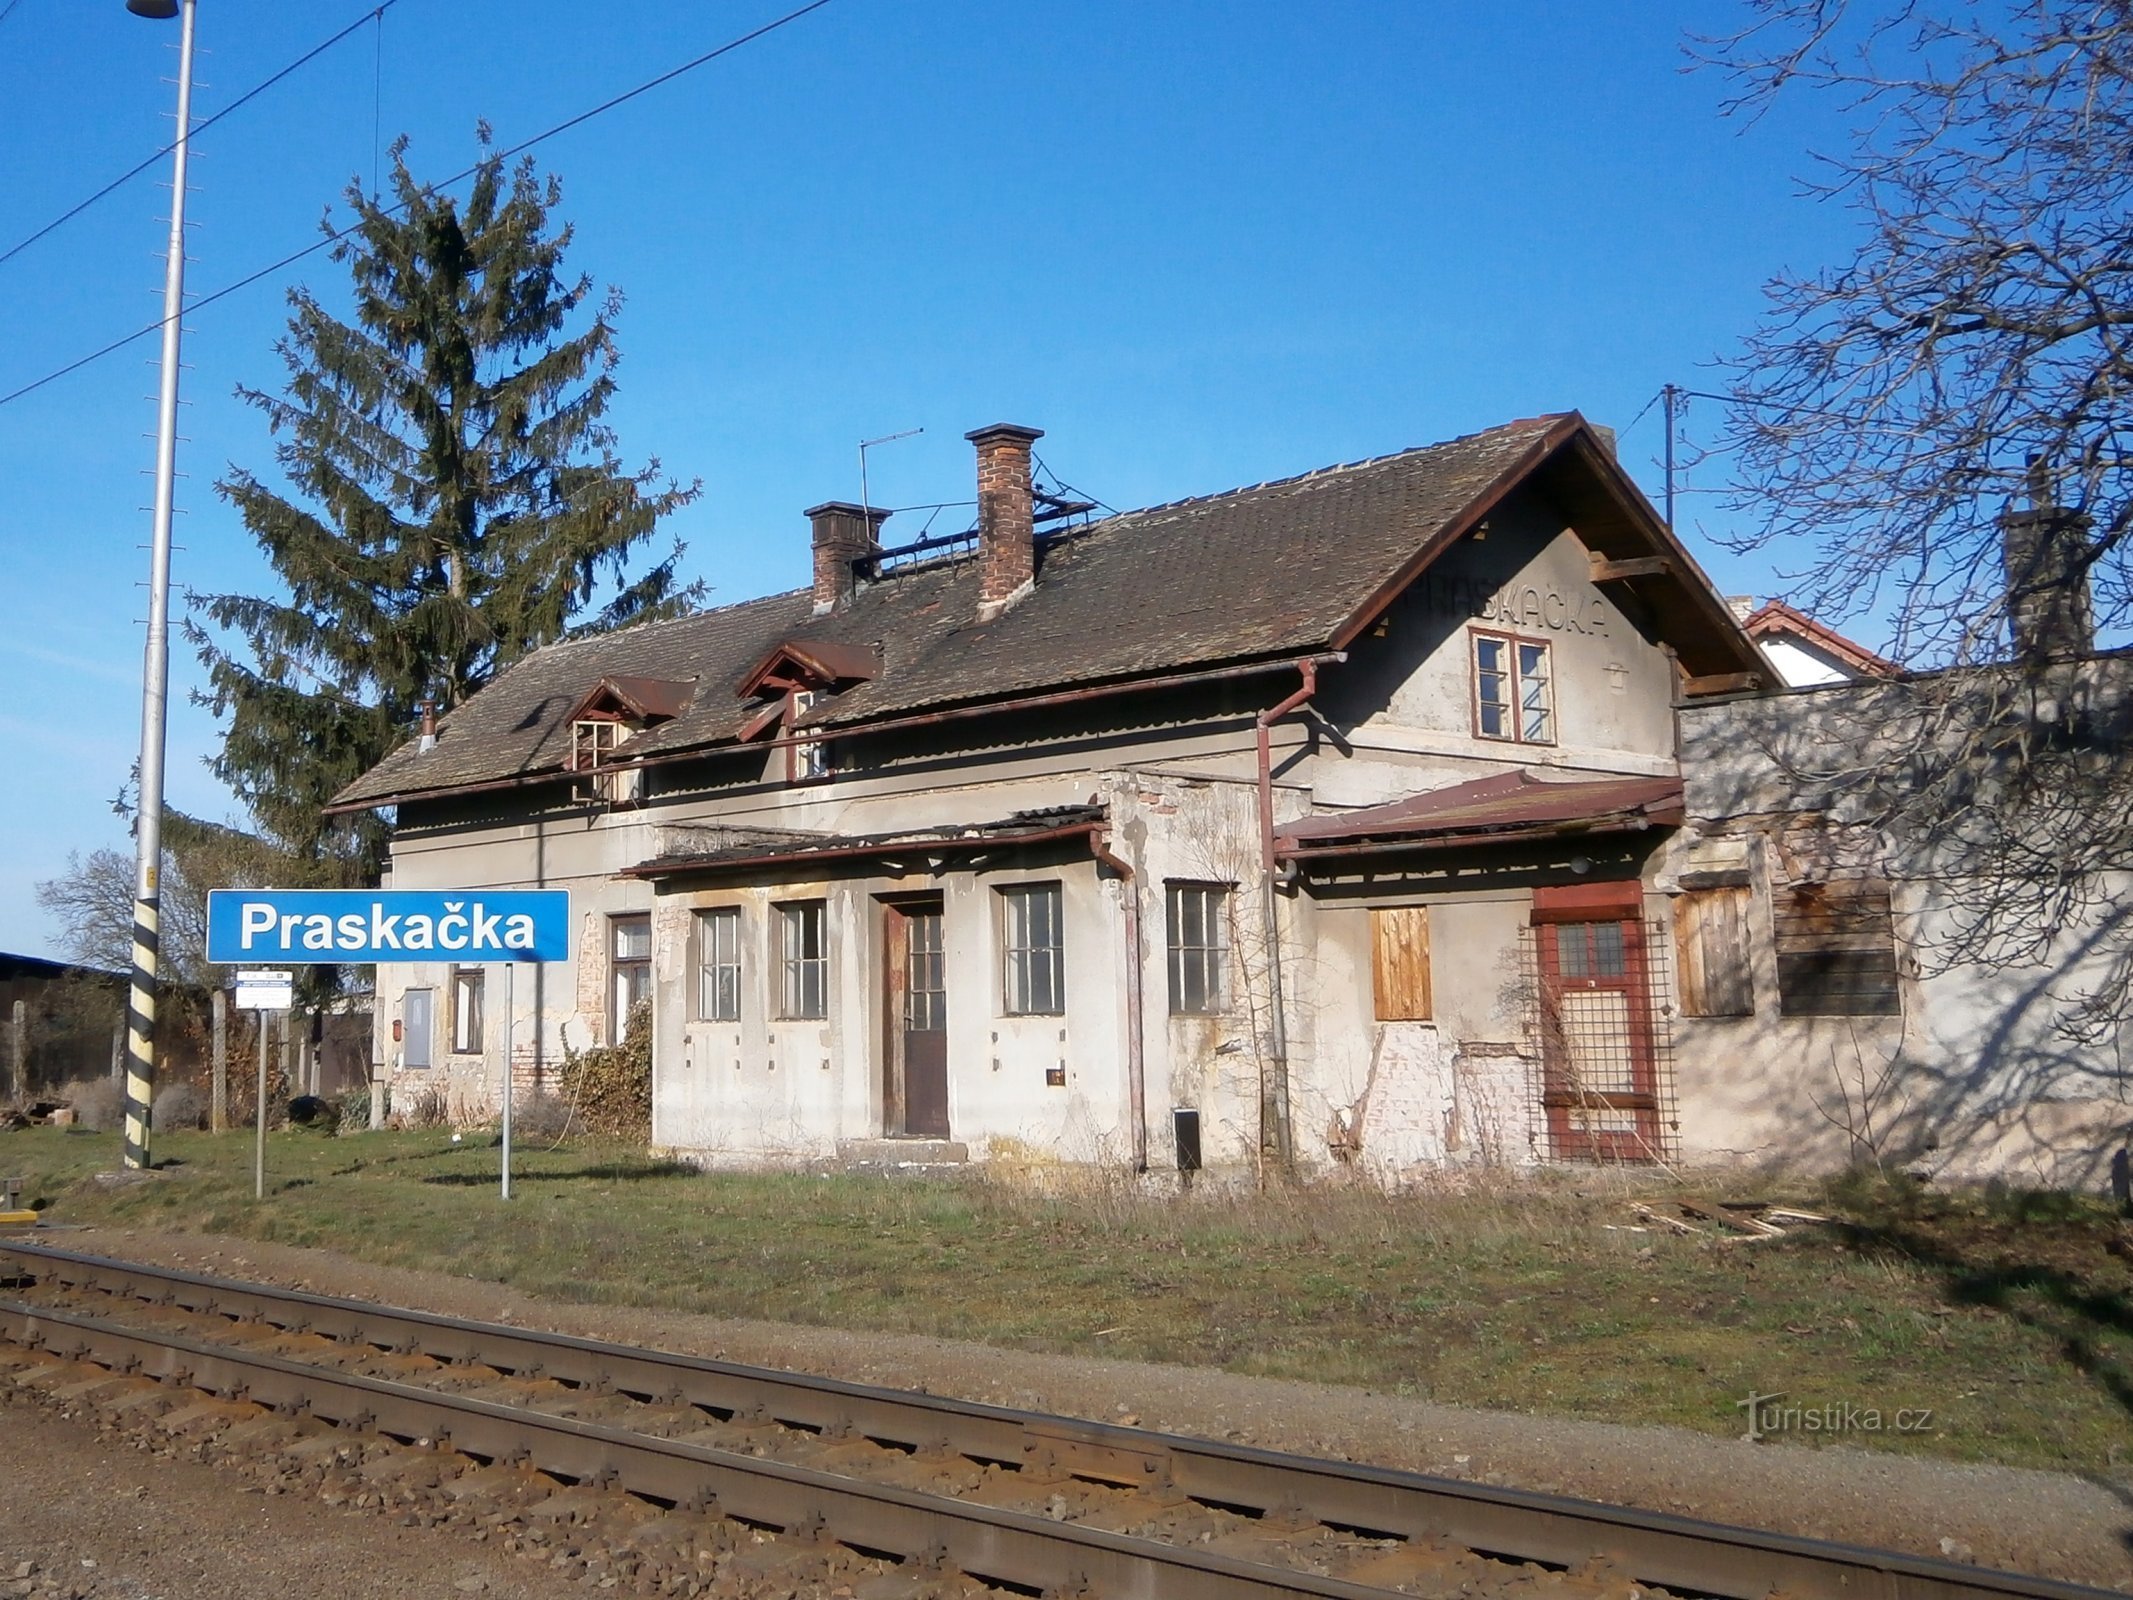 Vechea gară din Praskačka